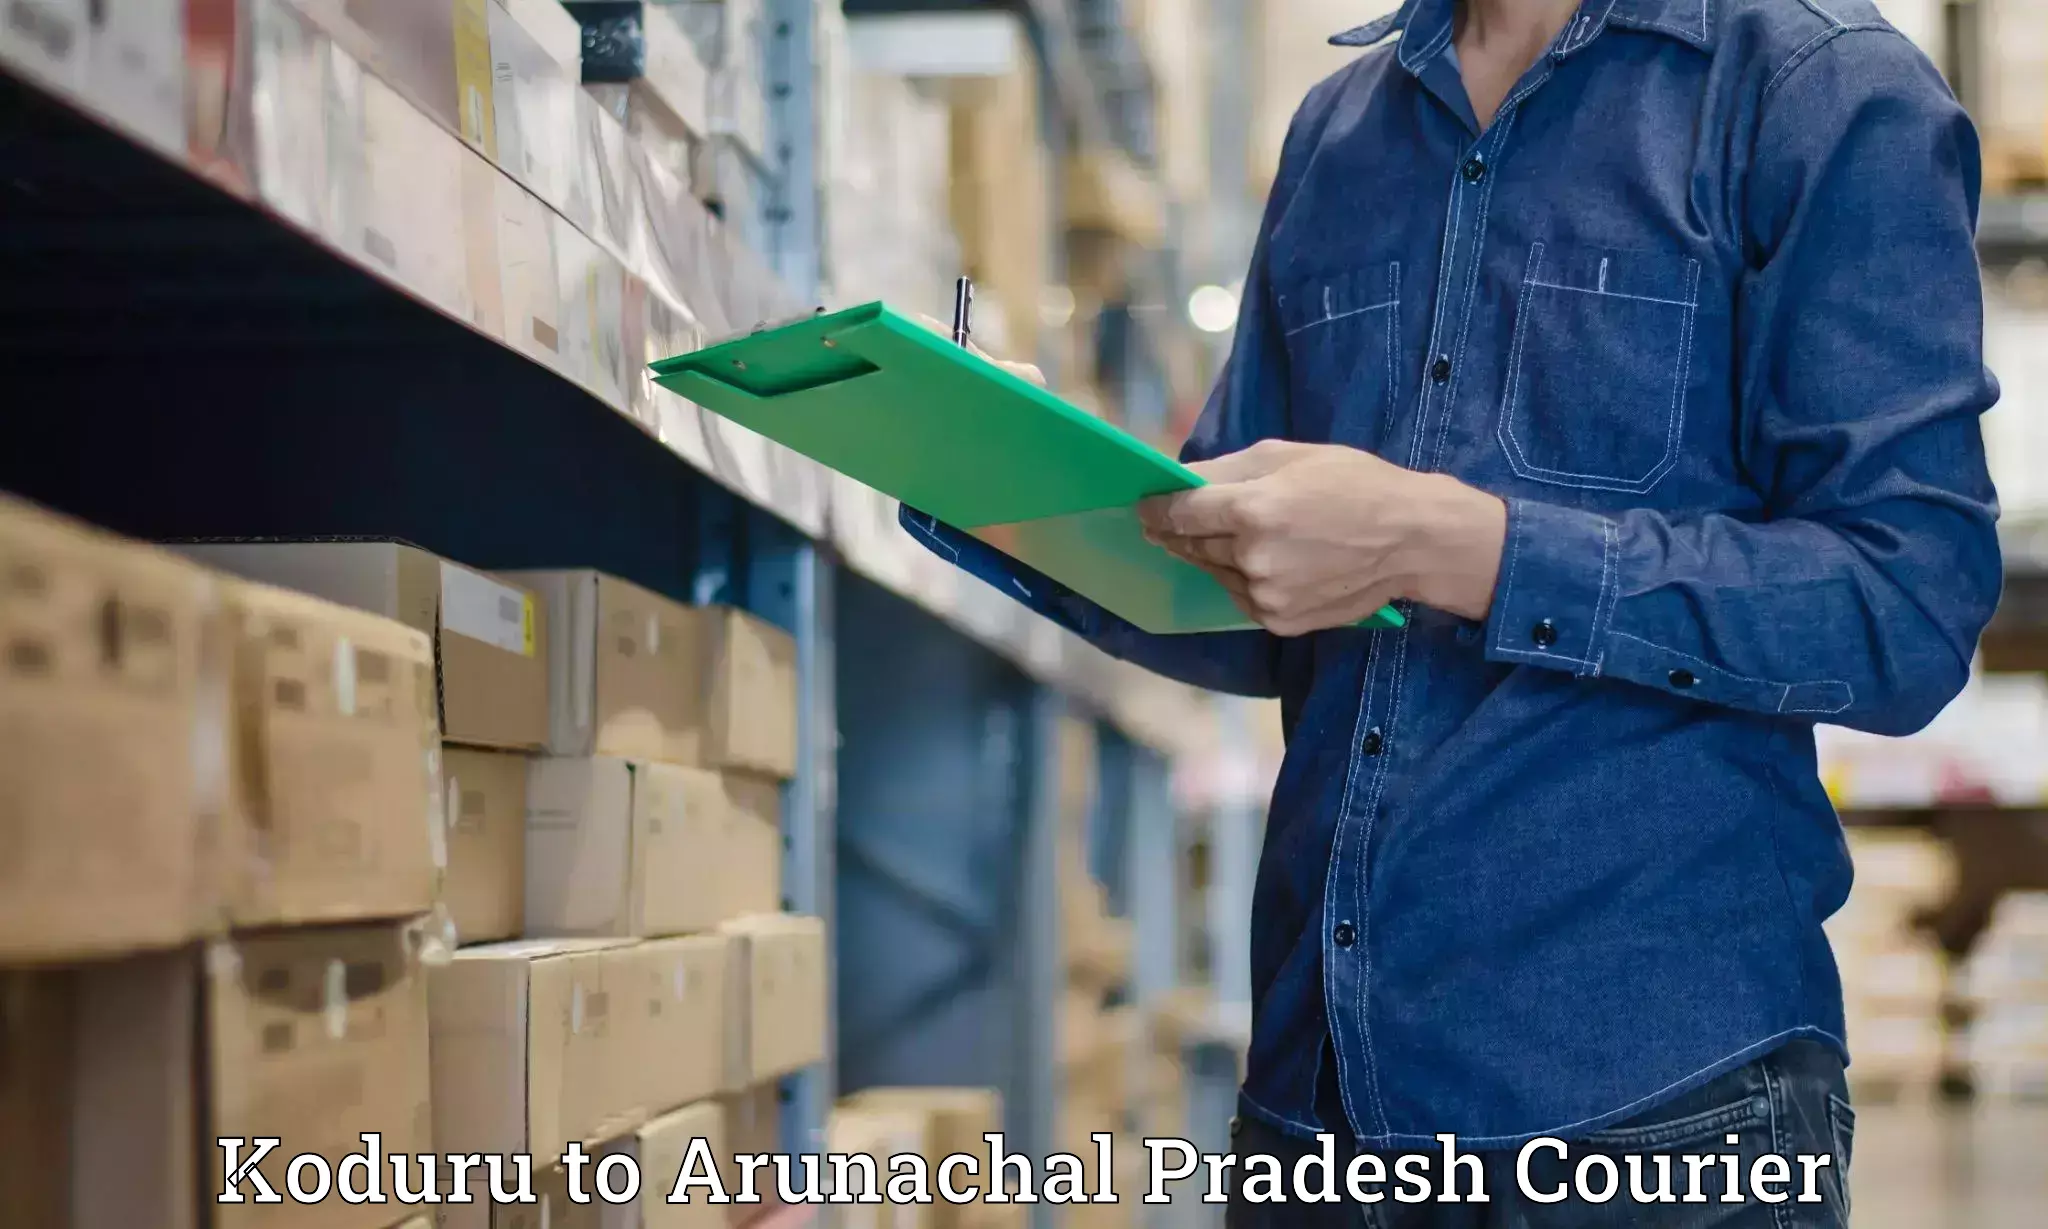 Large package courier Koduru to Jairampur